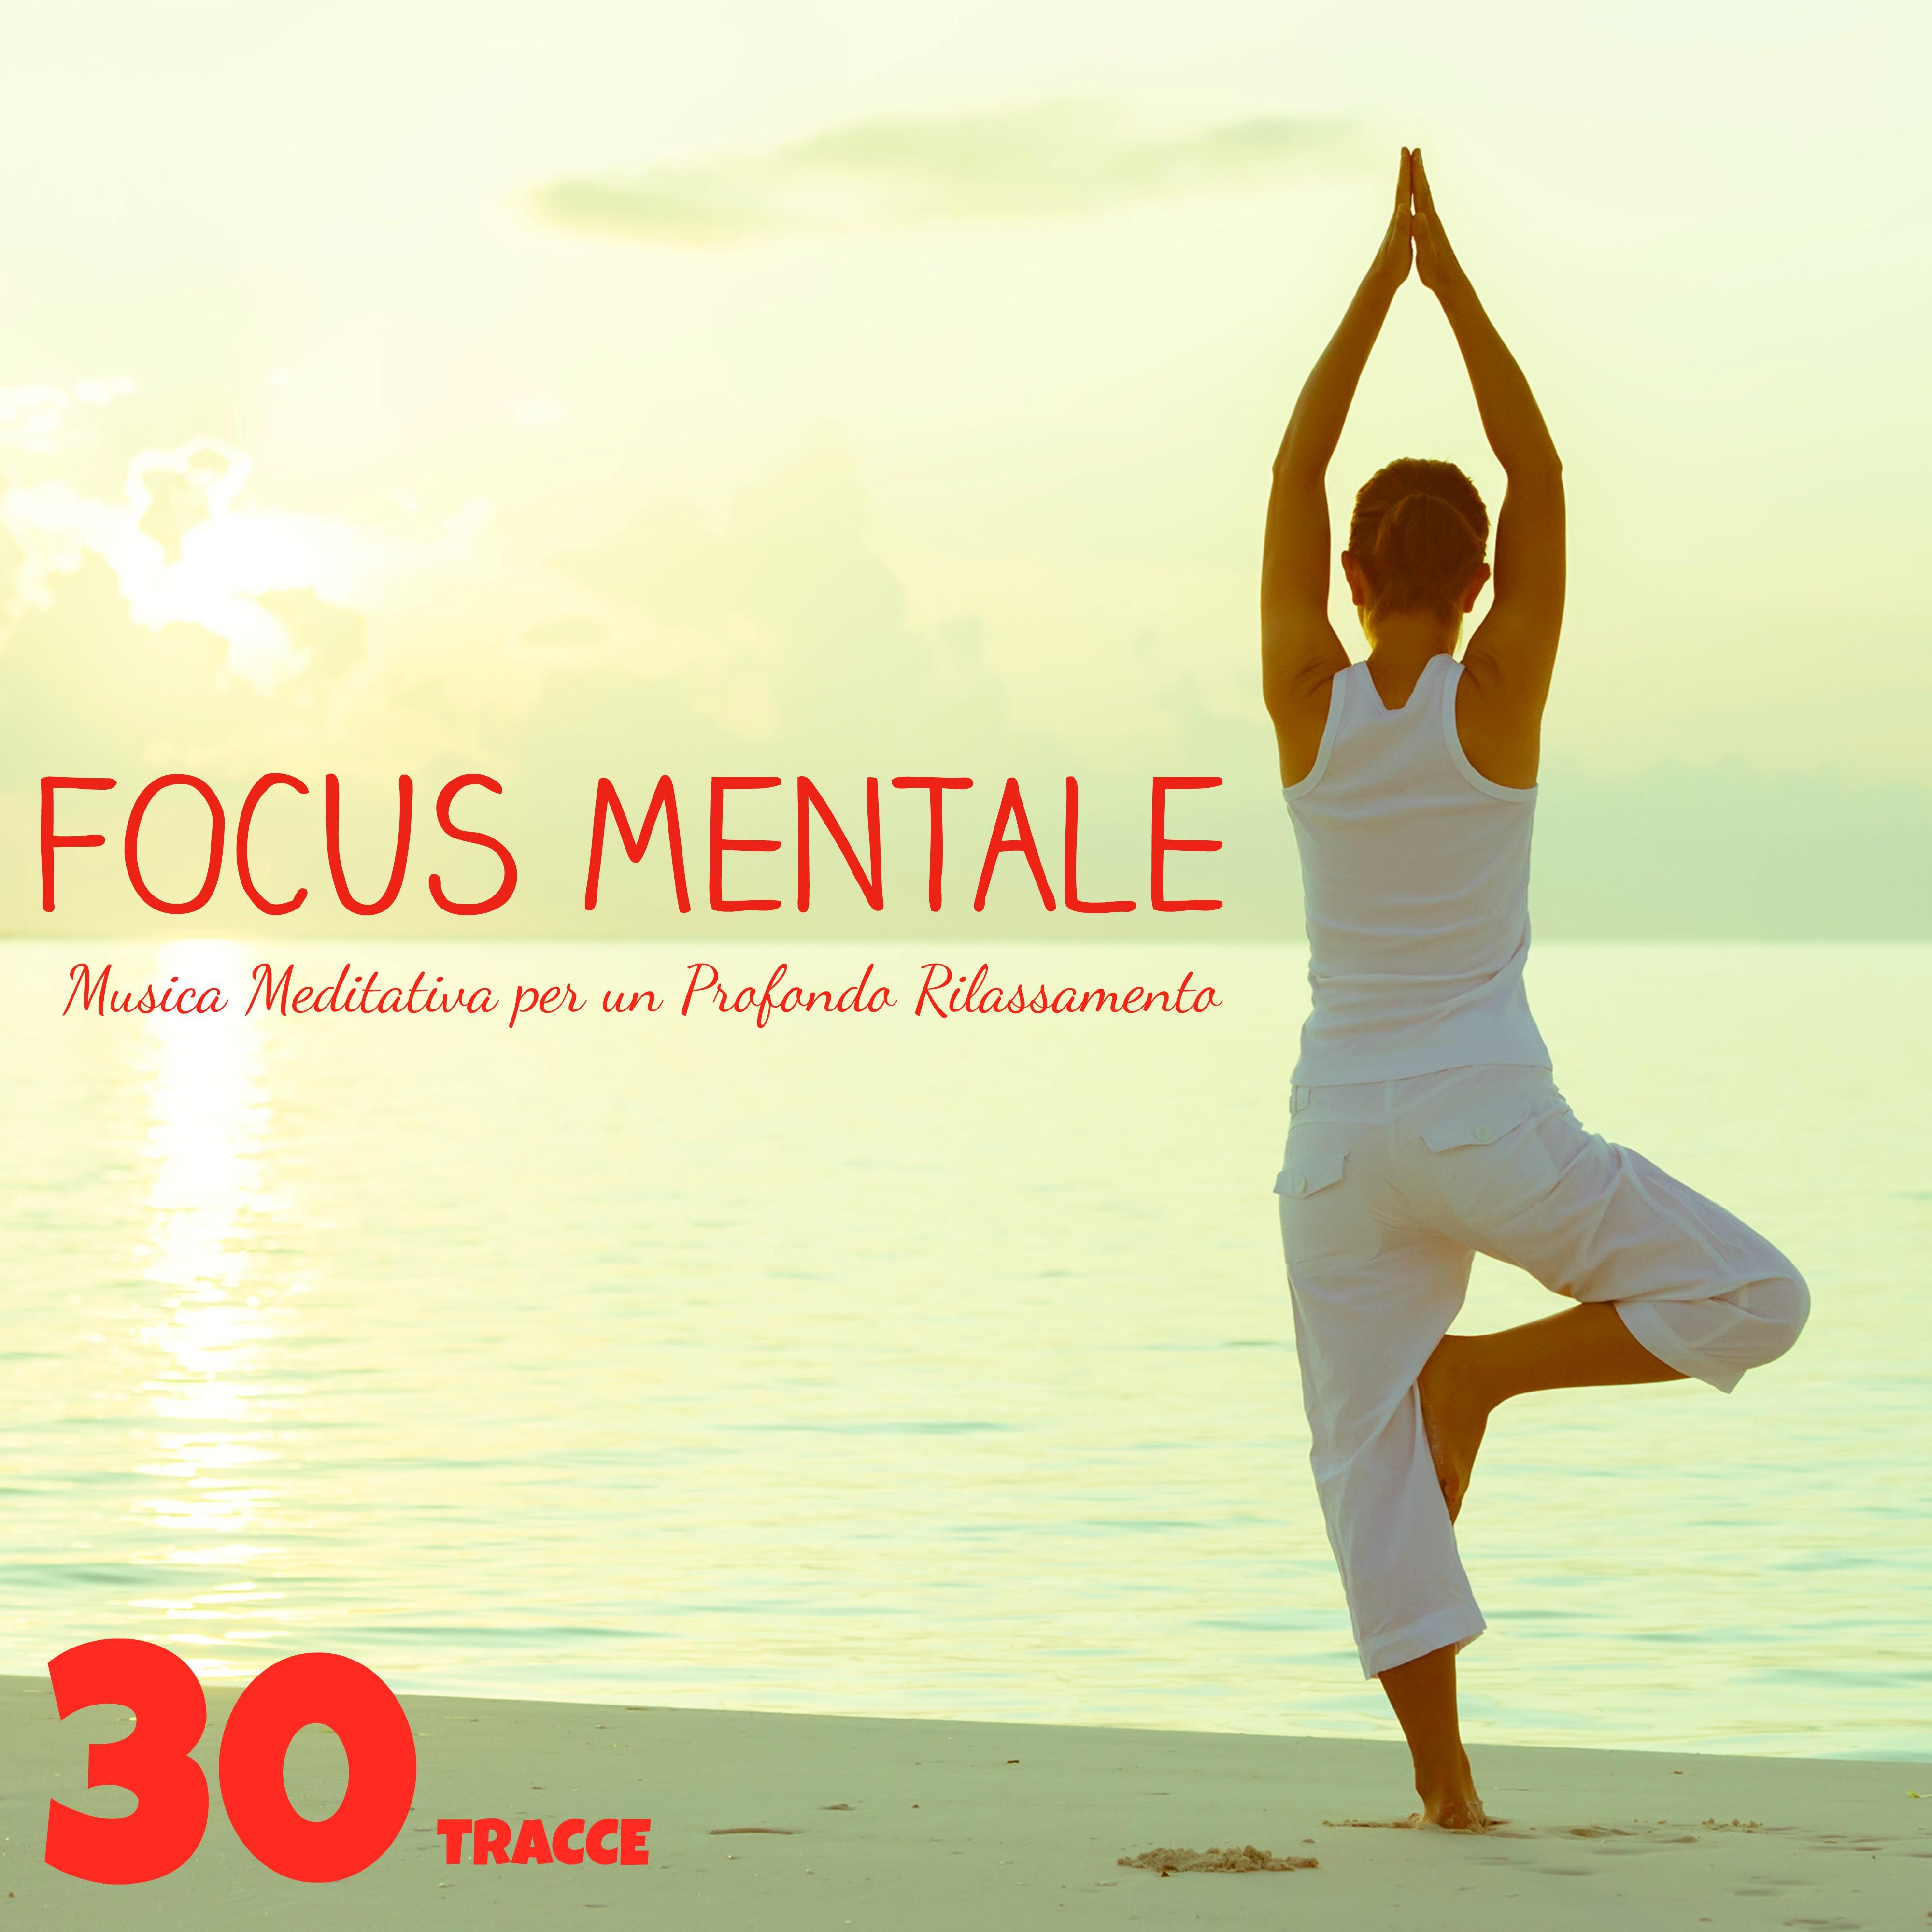 Focus Mentale: 30 Tracce di Musica Meditativa per un Profondo Rilassamento e un'efficace Musicoterapia contro l'Ansia (Suoni della Natura e Strumentali)